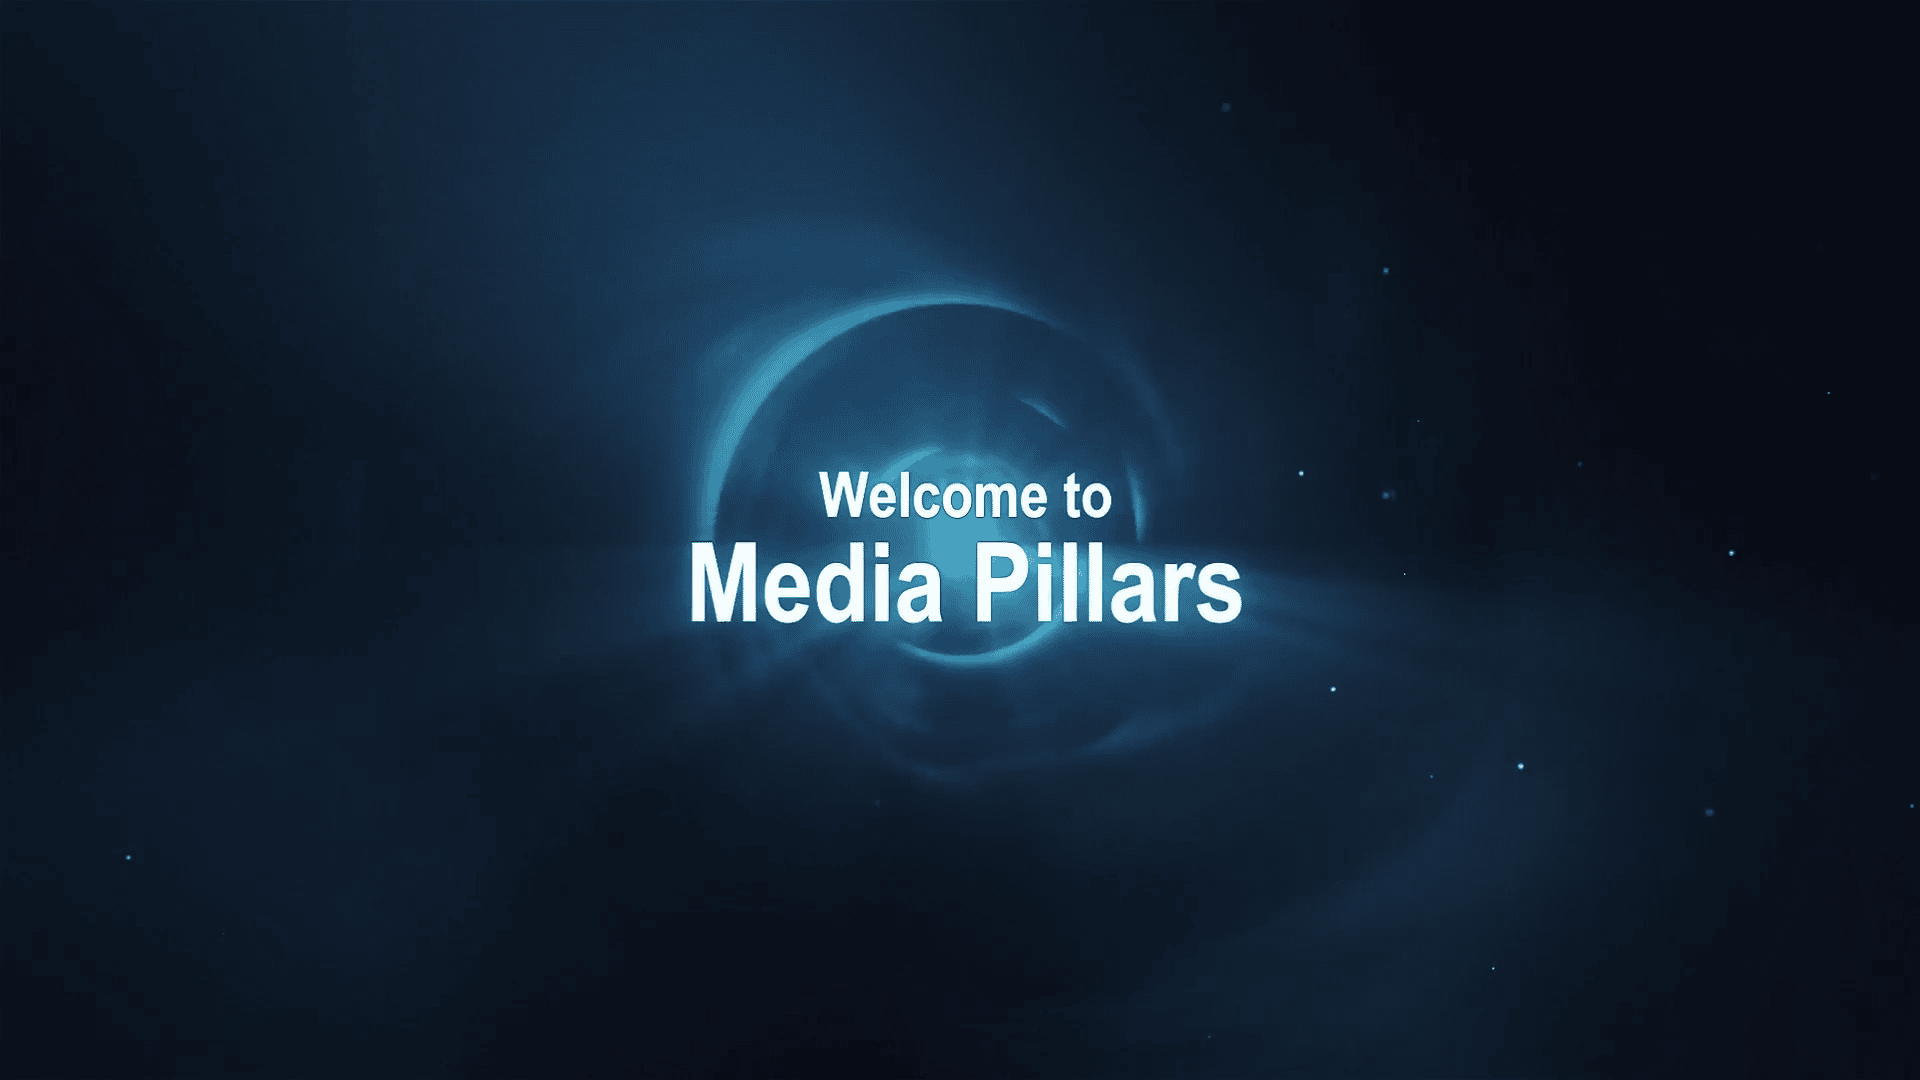 Media Pillars Website & Design Trailer